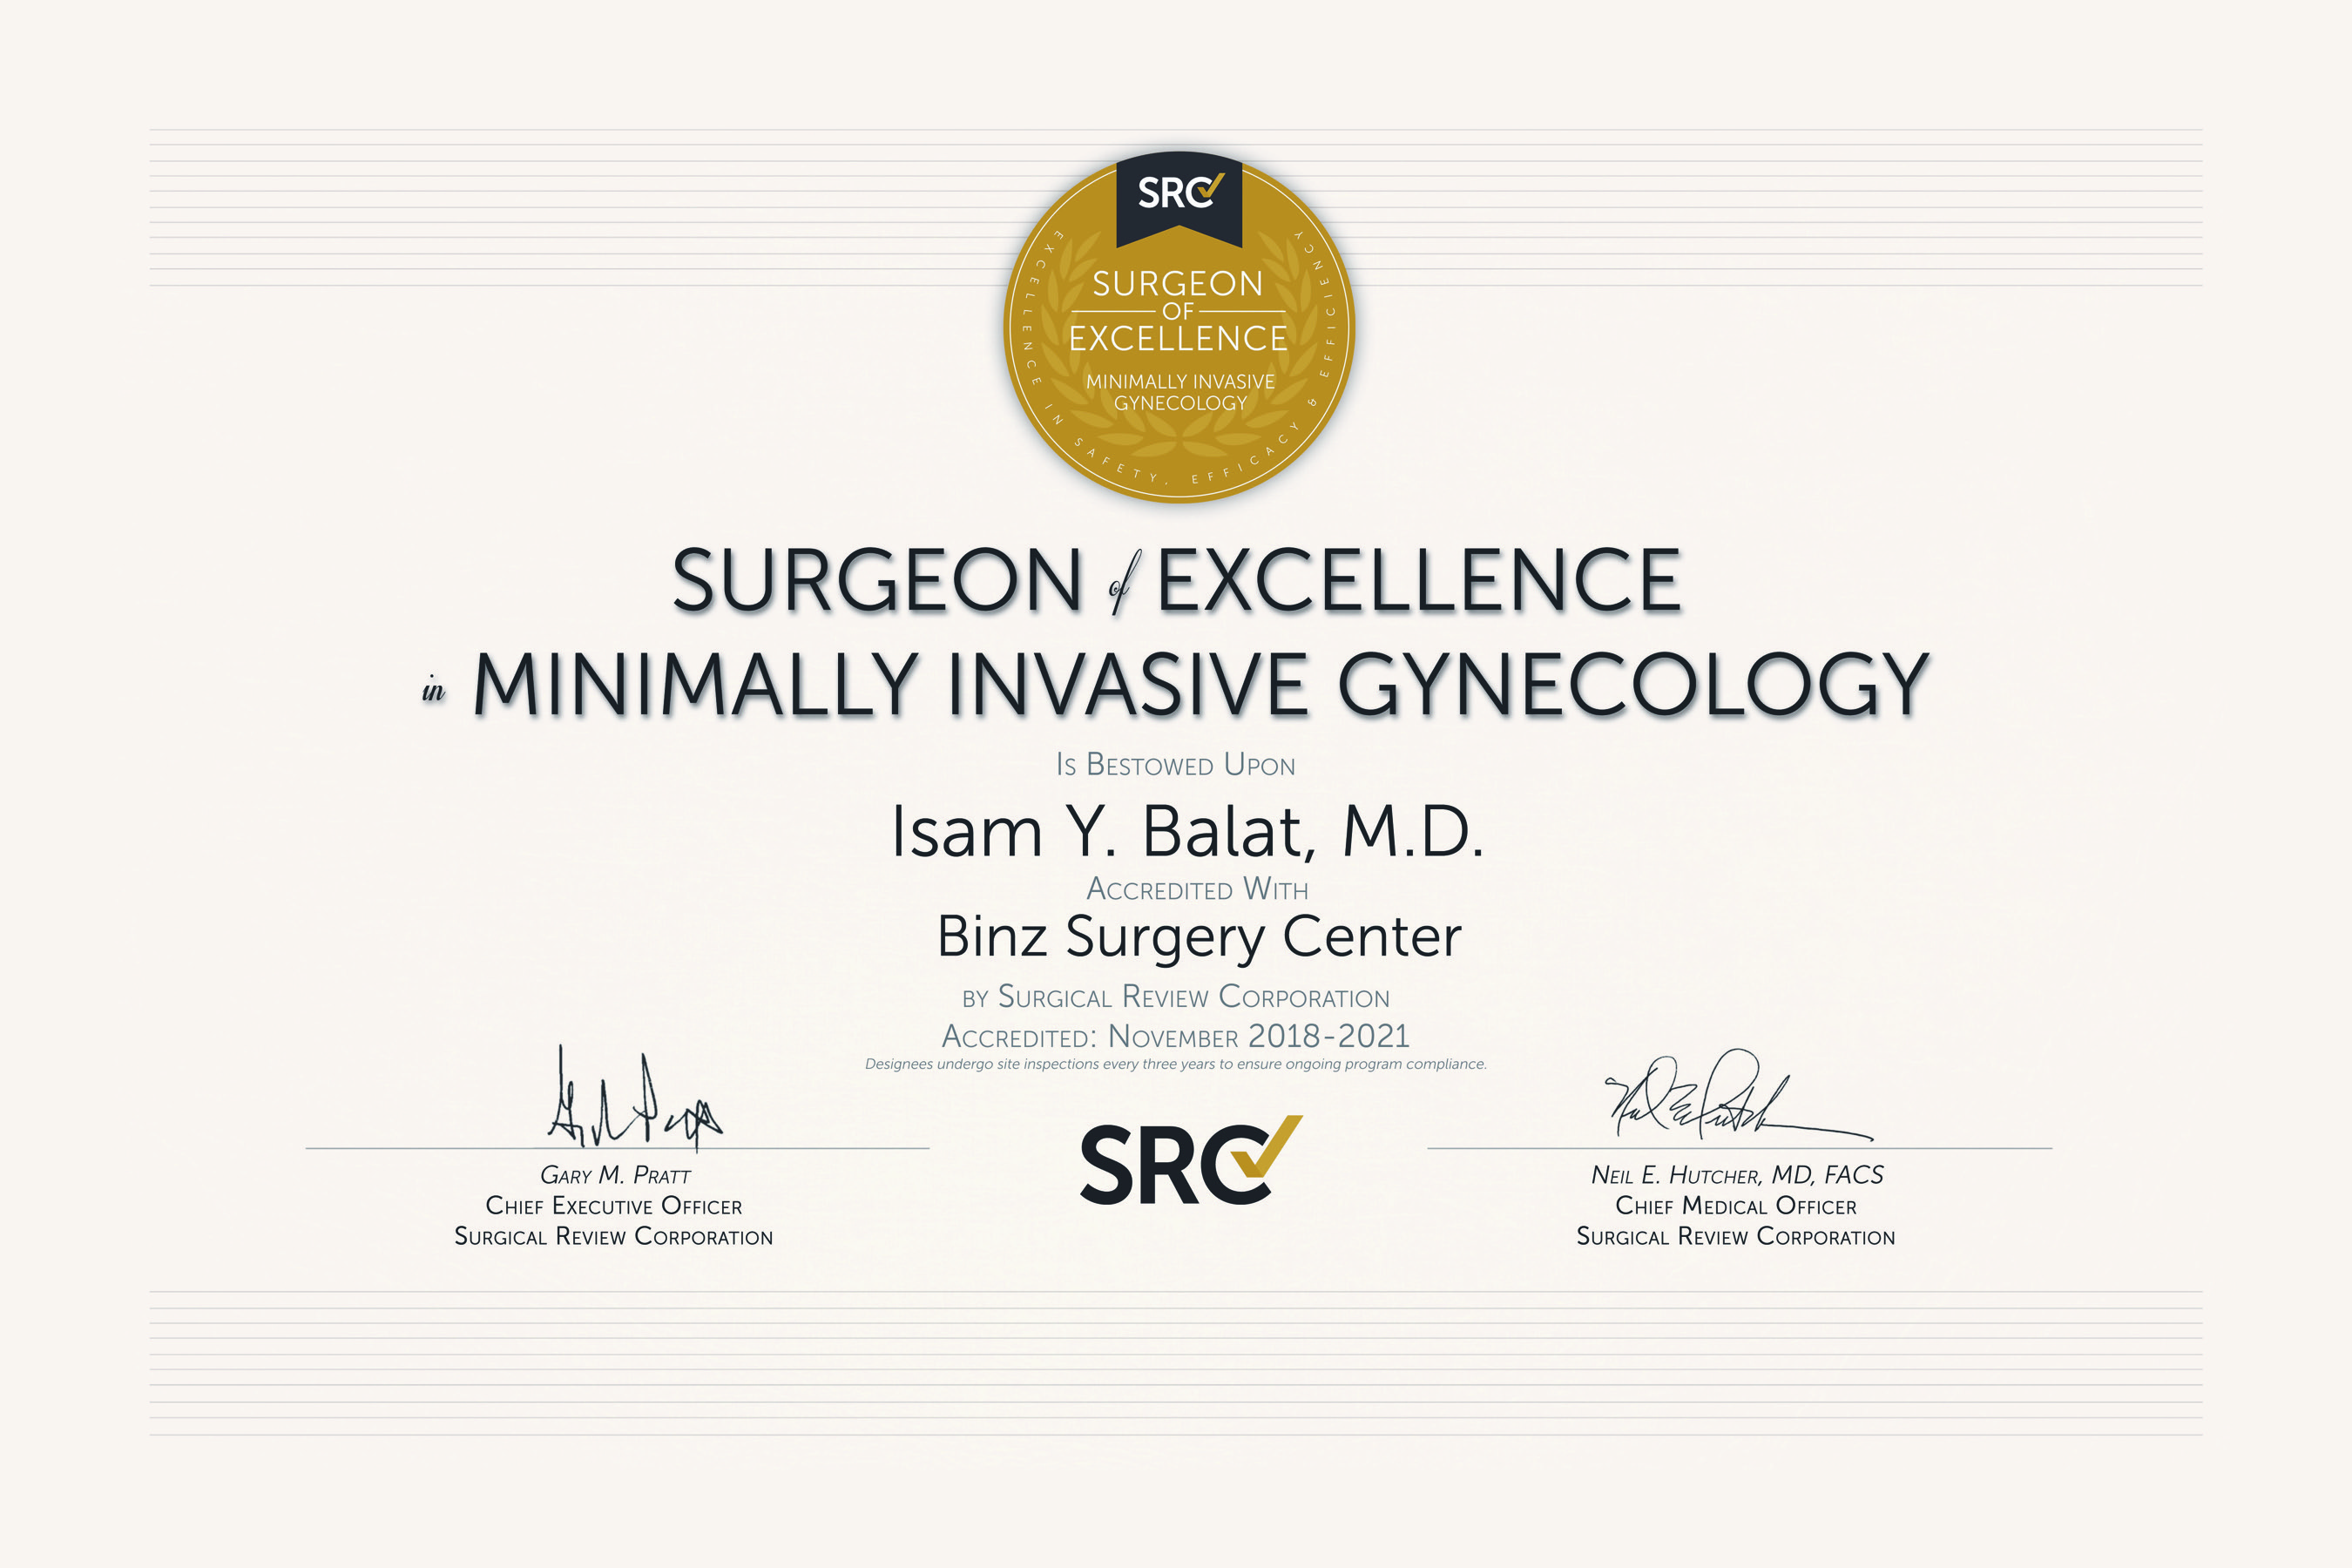 Binz Surgery Center | OBGYN Services